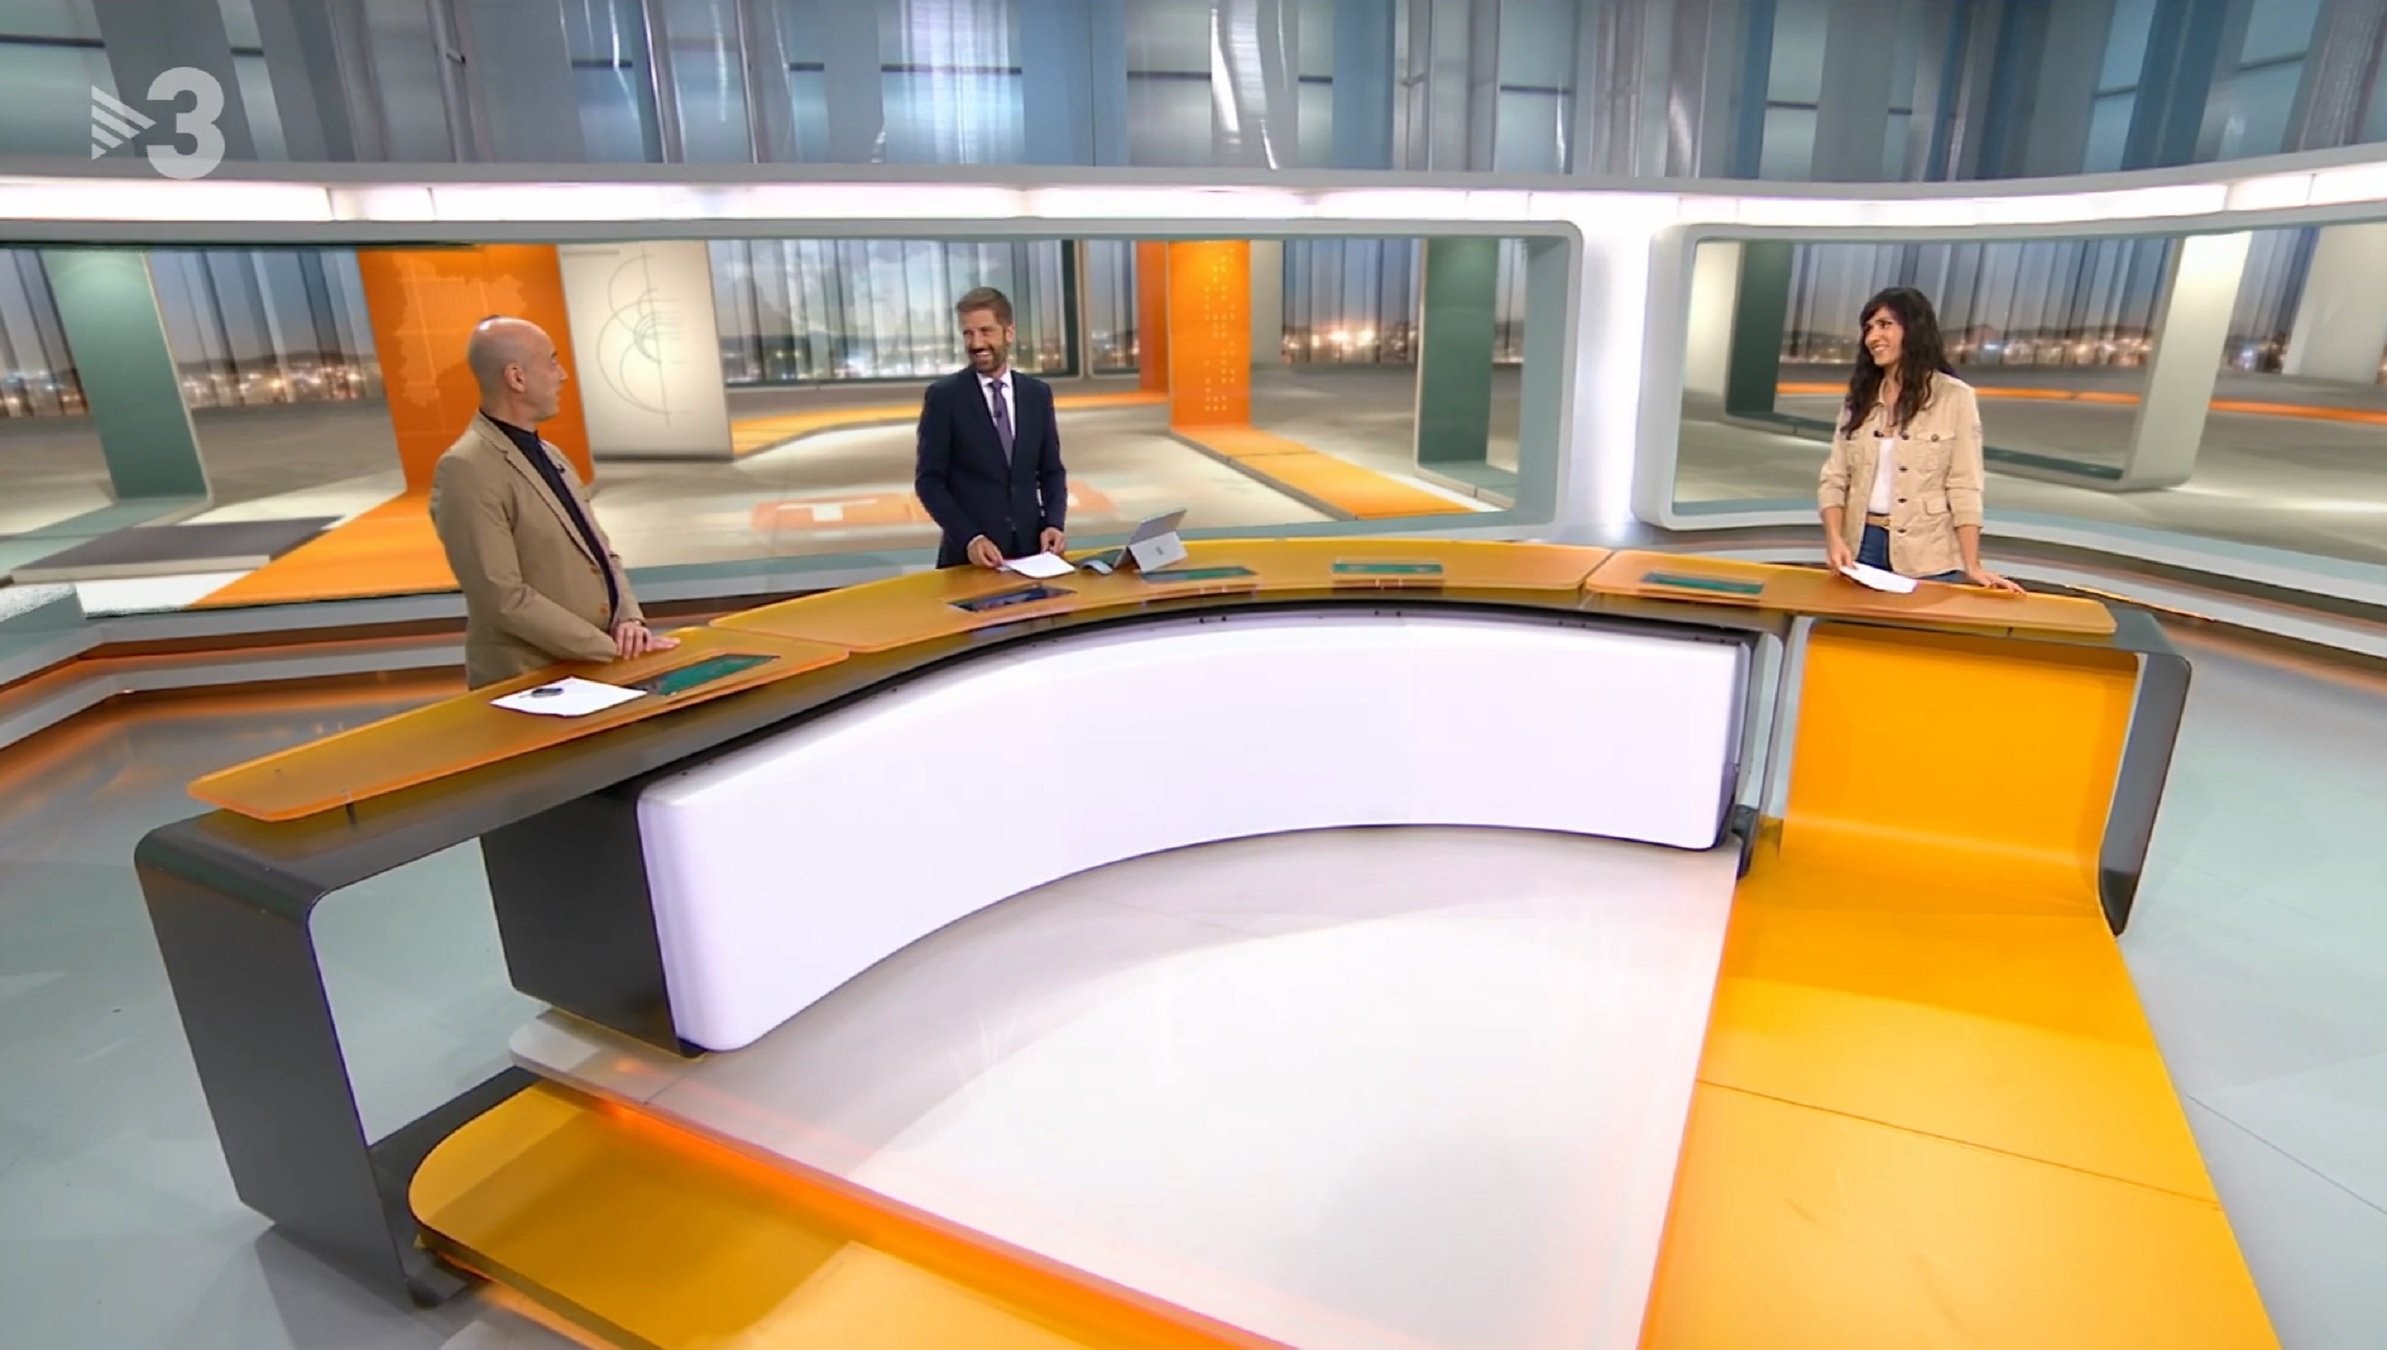 Presentador VIP deja a la Generalitat y vuelve a TV3: "No soy de ningún partido"